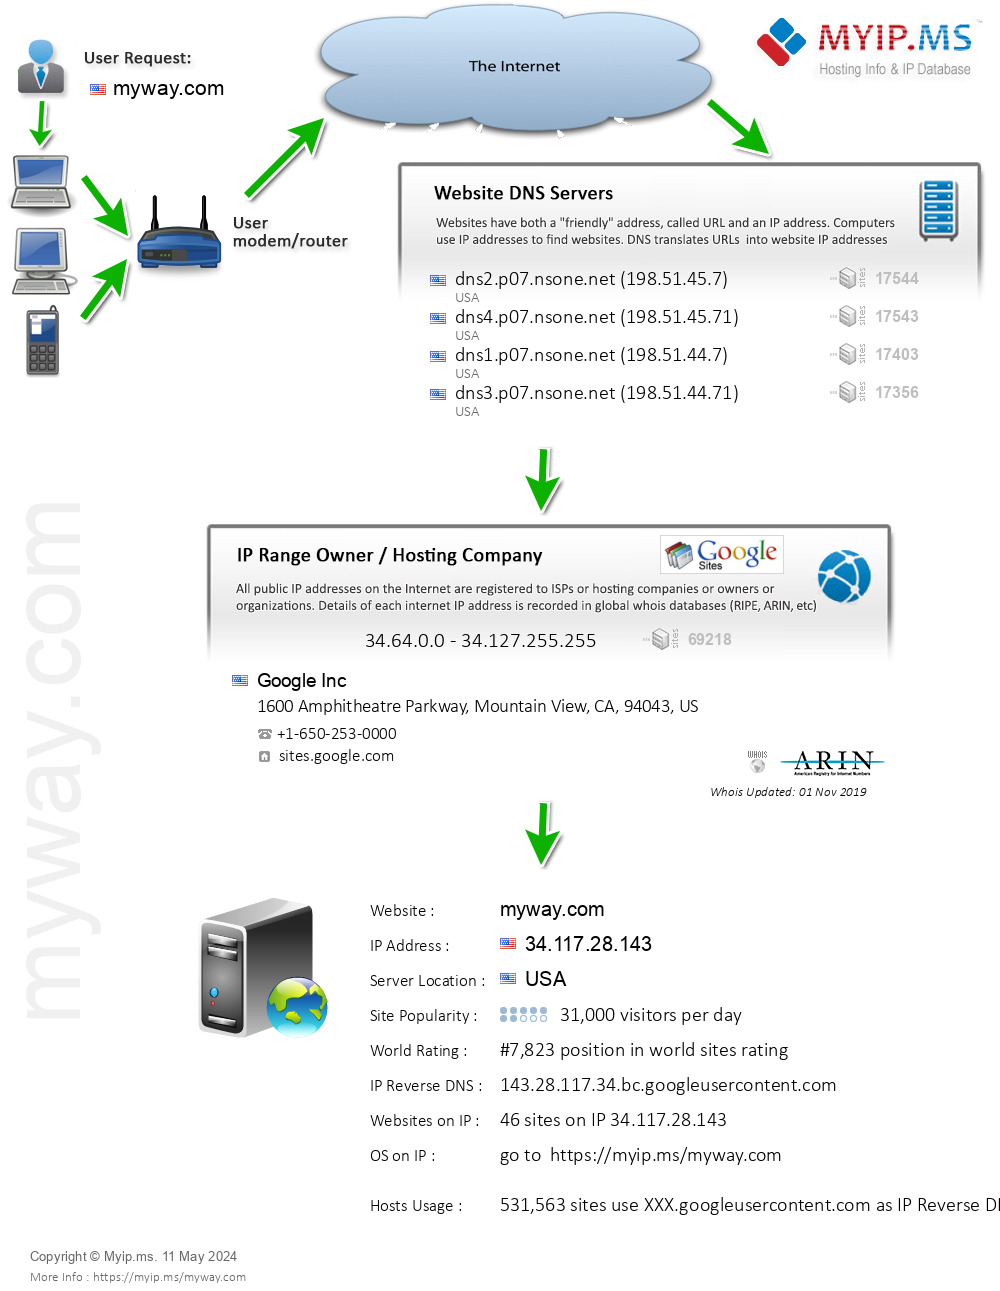 Myway.com - Website Hosting Visual IP Diagram